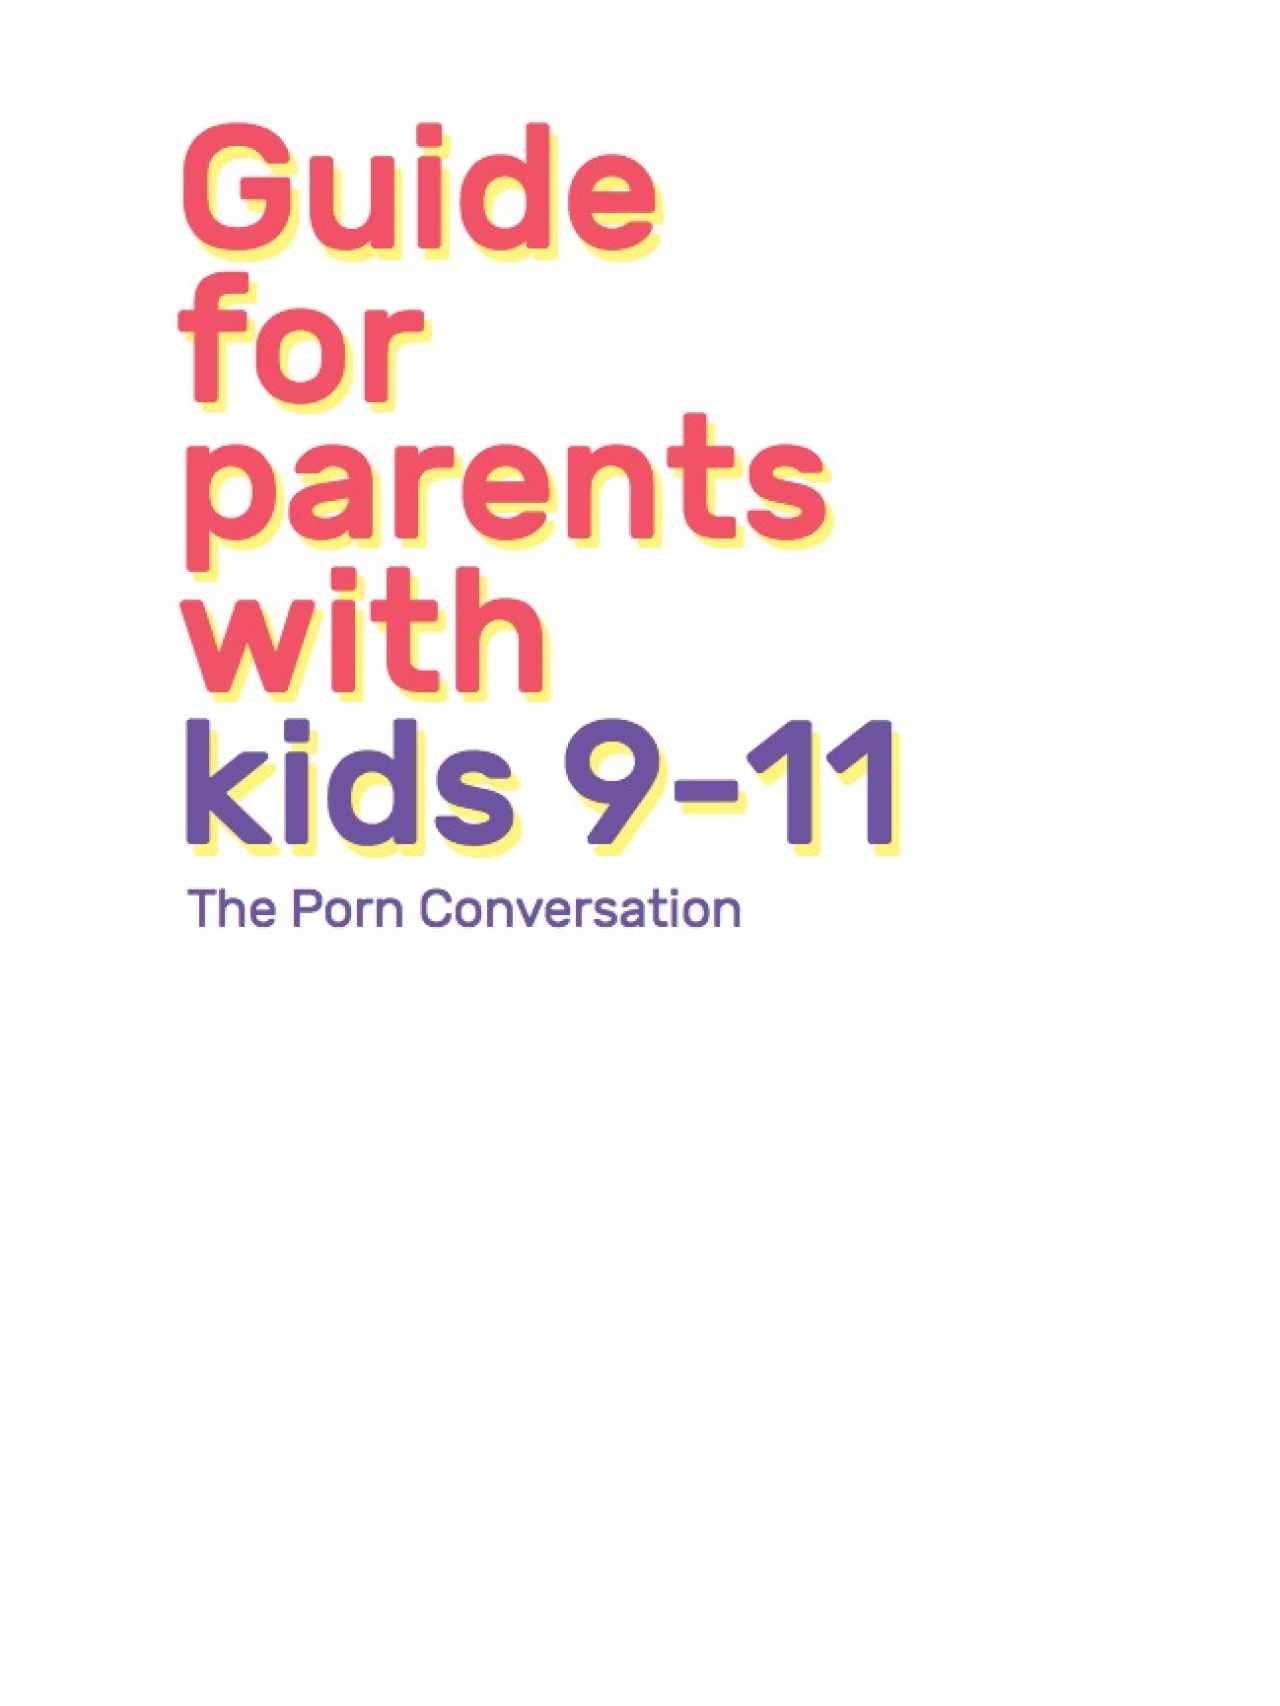 La guía está dividida en tres libros, en función de la edad del niño al que va dirigida la conversación.